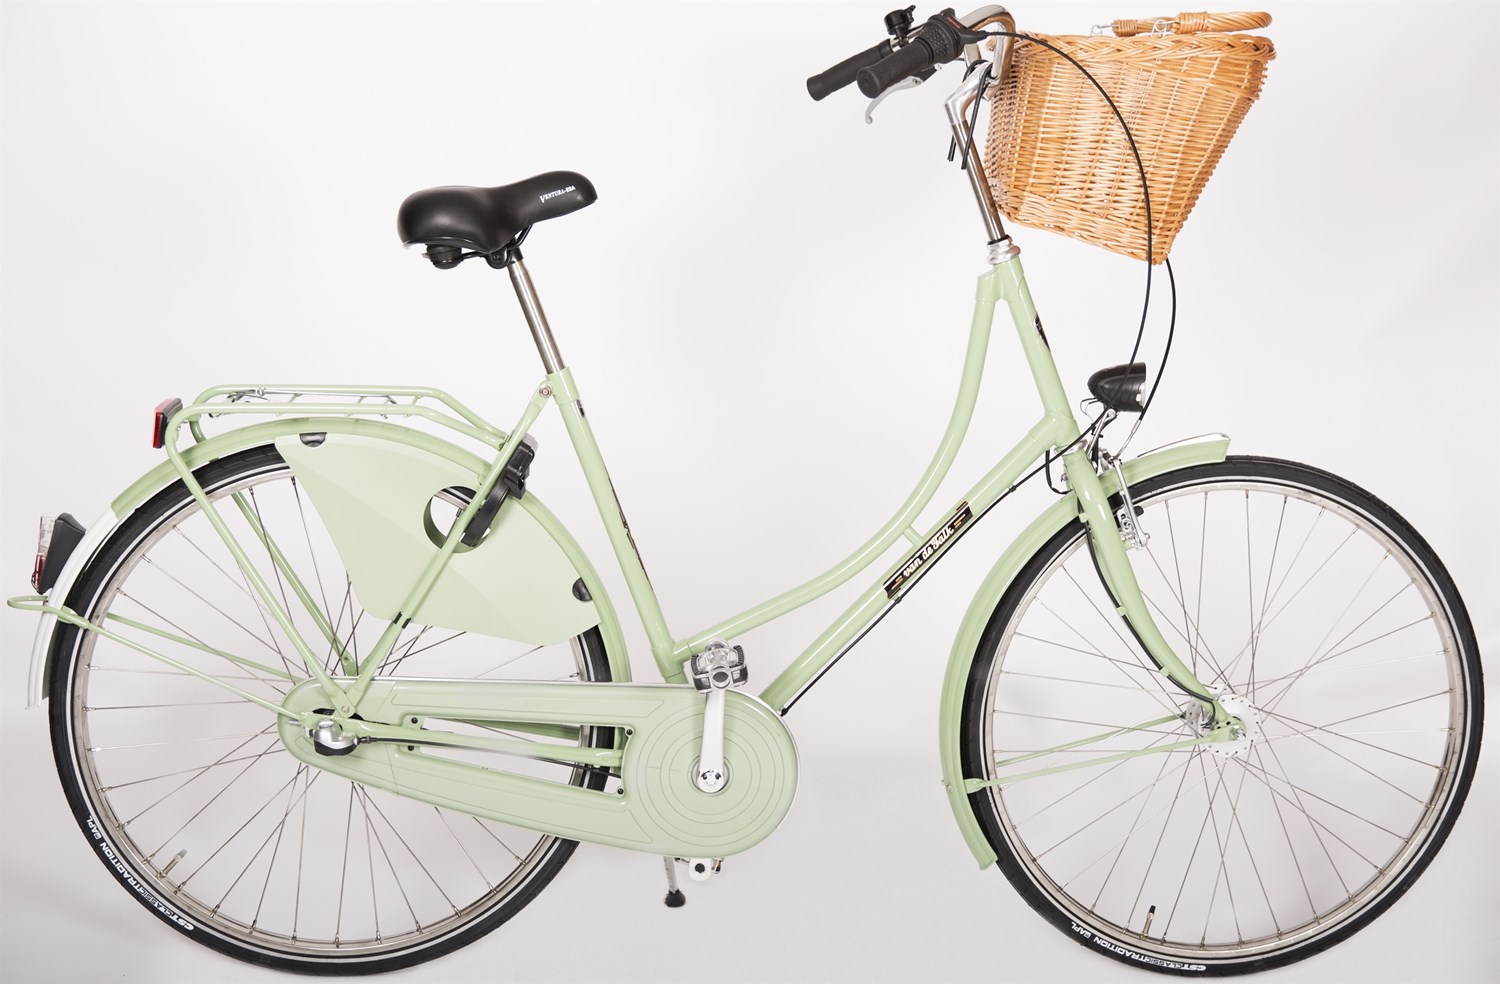 Cykelhandler i Sydhavn | Cykelsmed Christianshavn og Amager